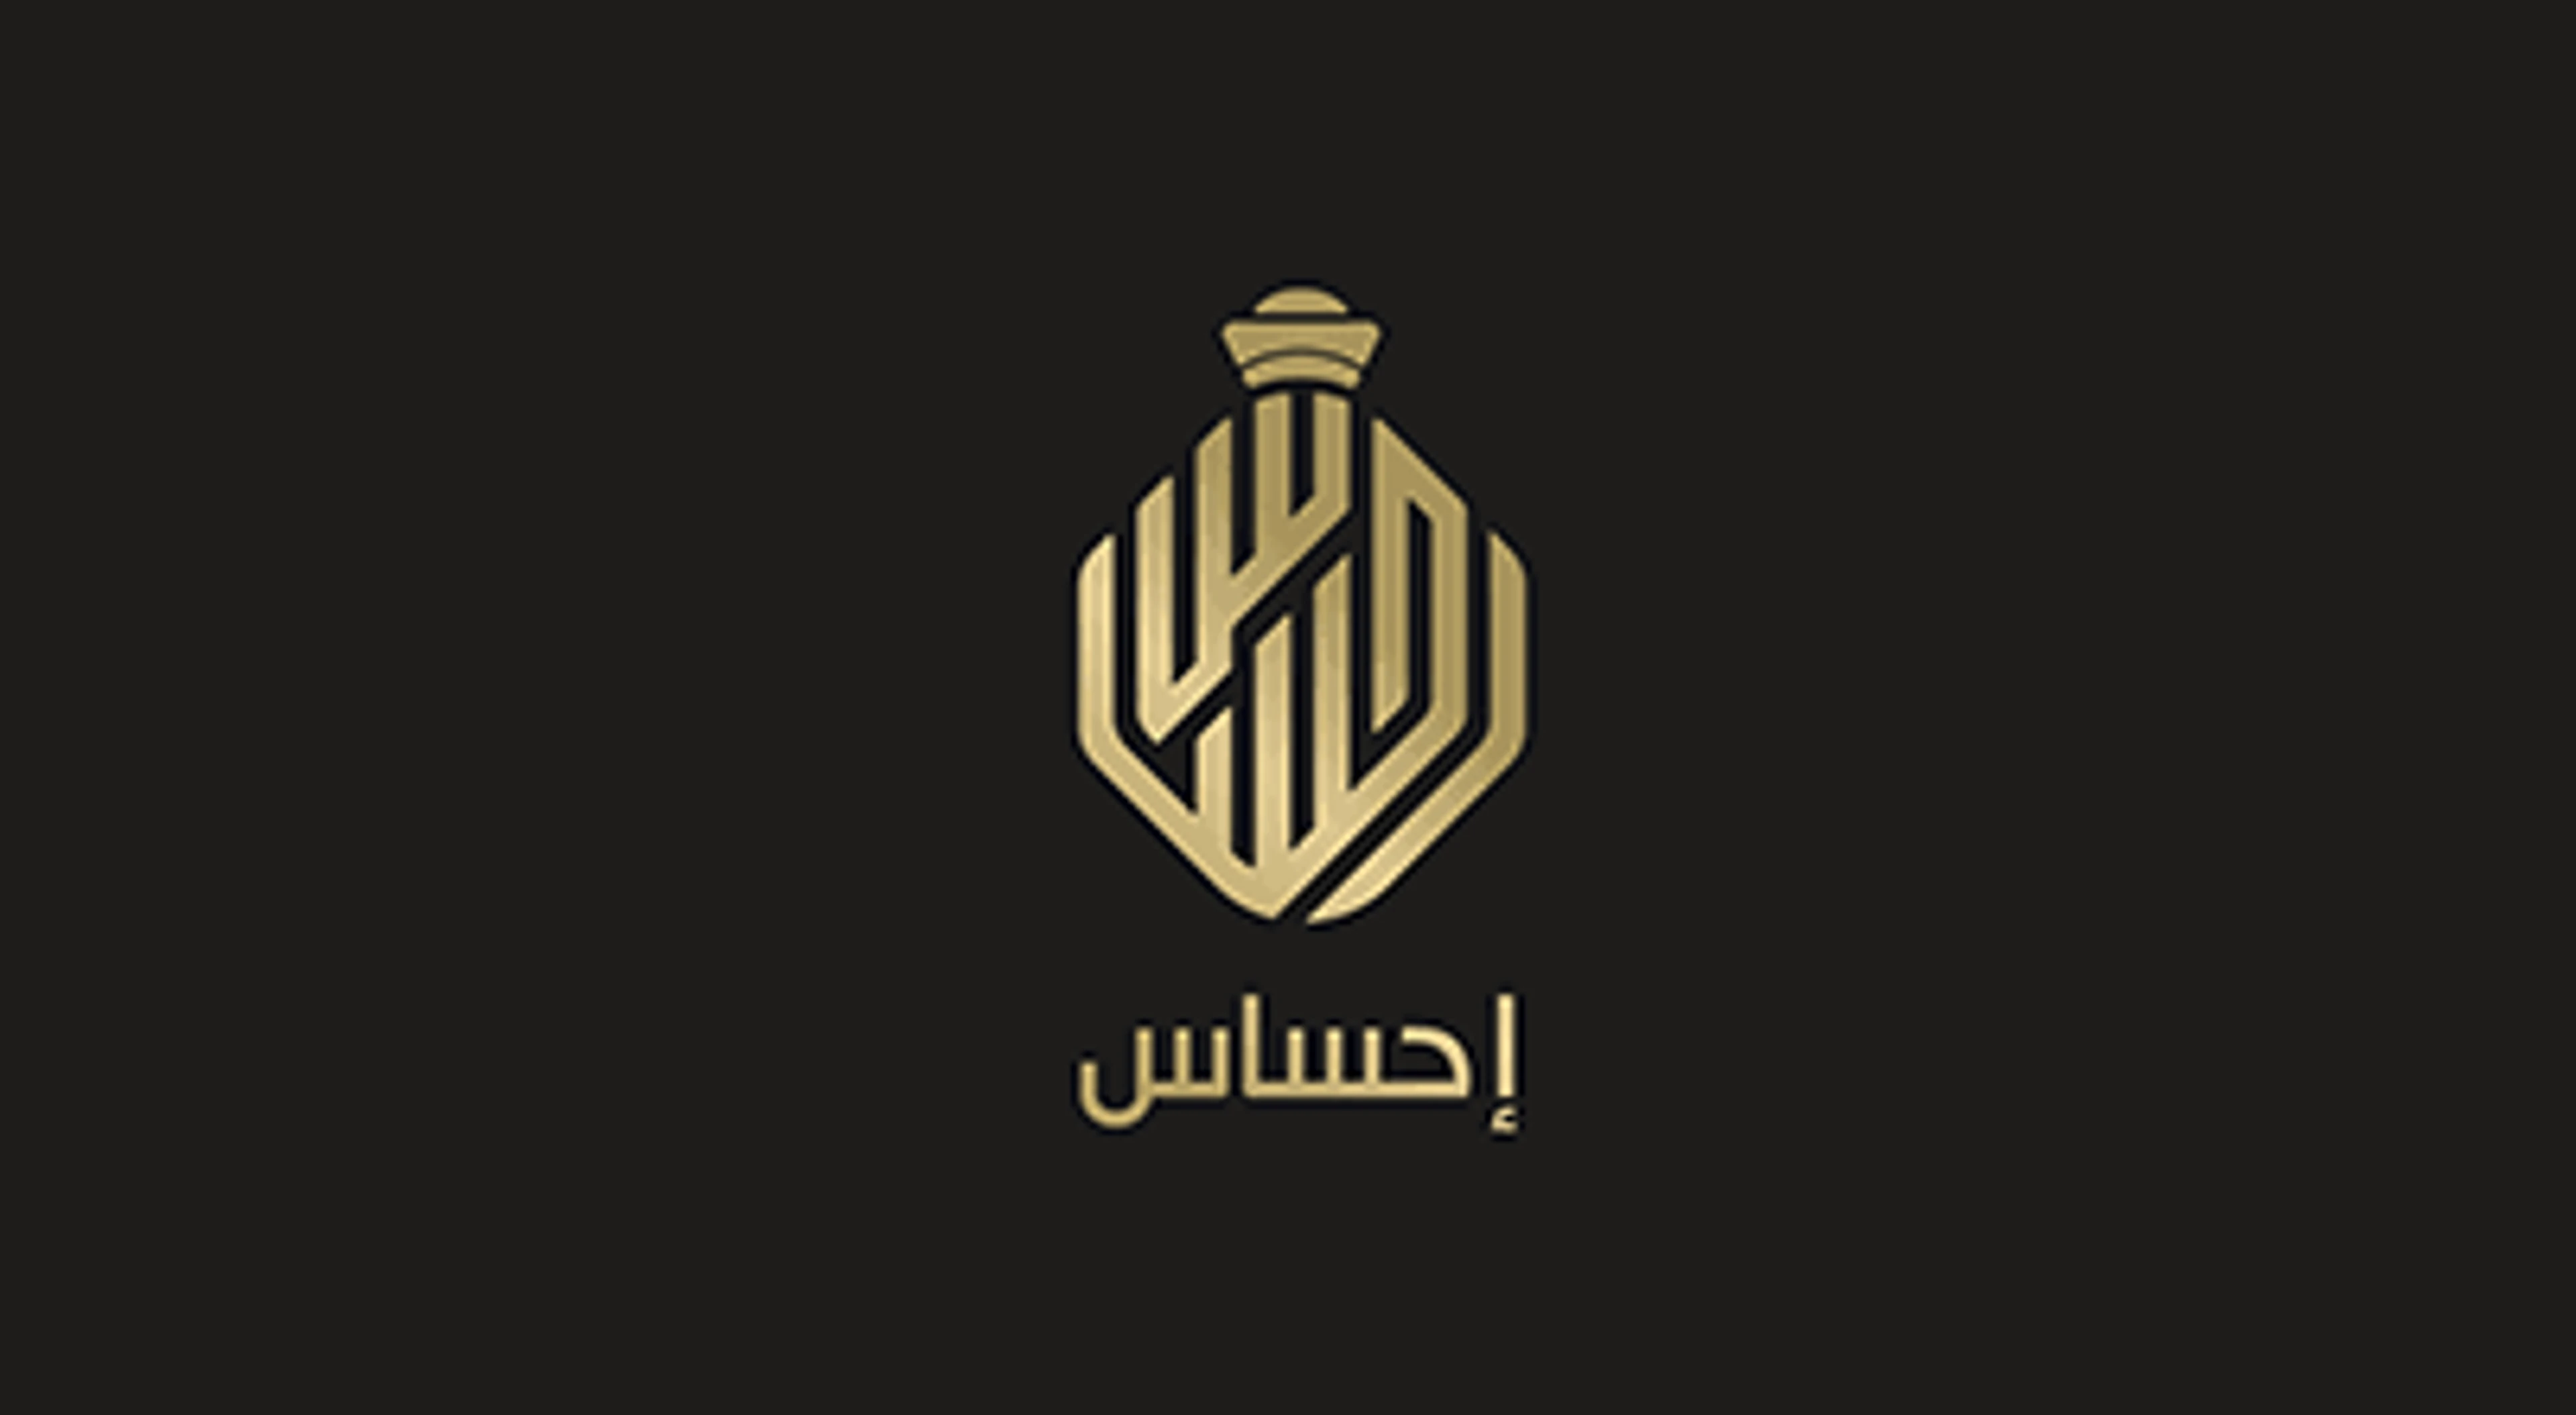 تصميم شعار بالخط العربي 